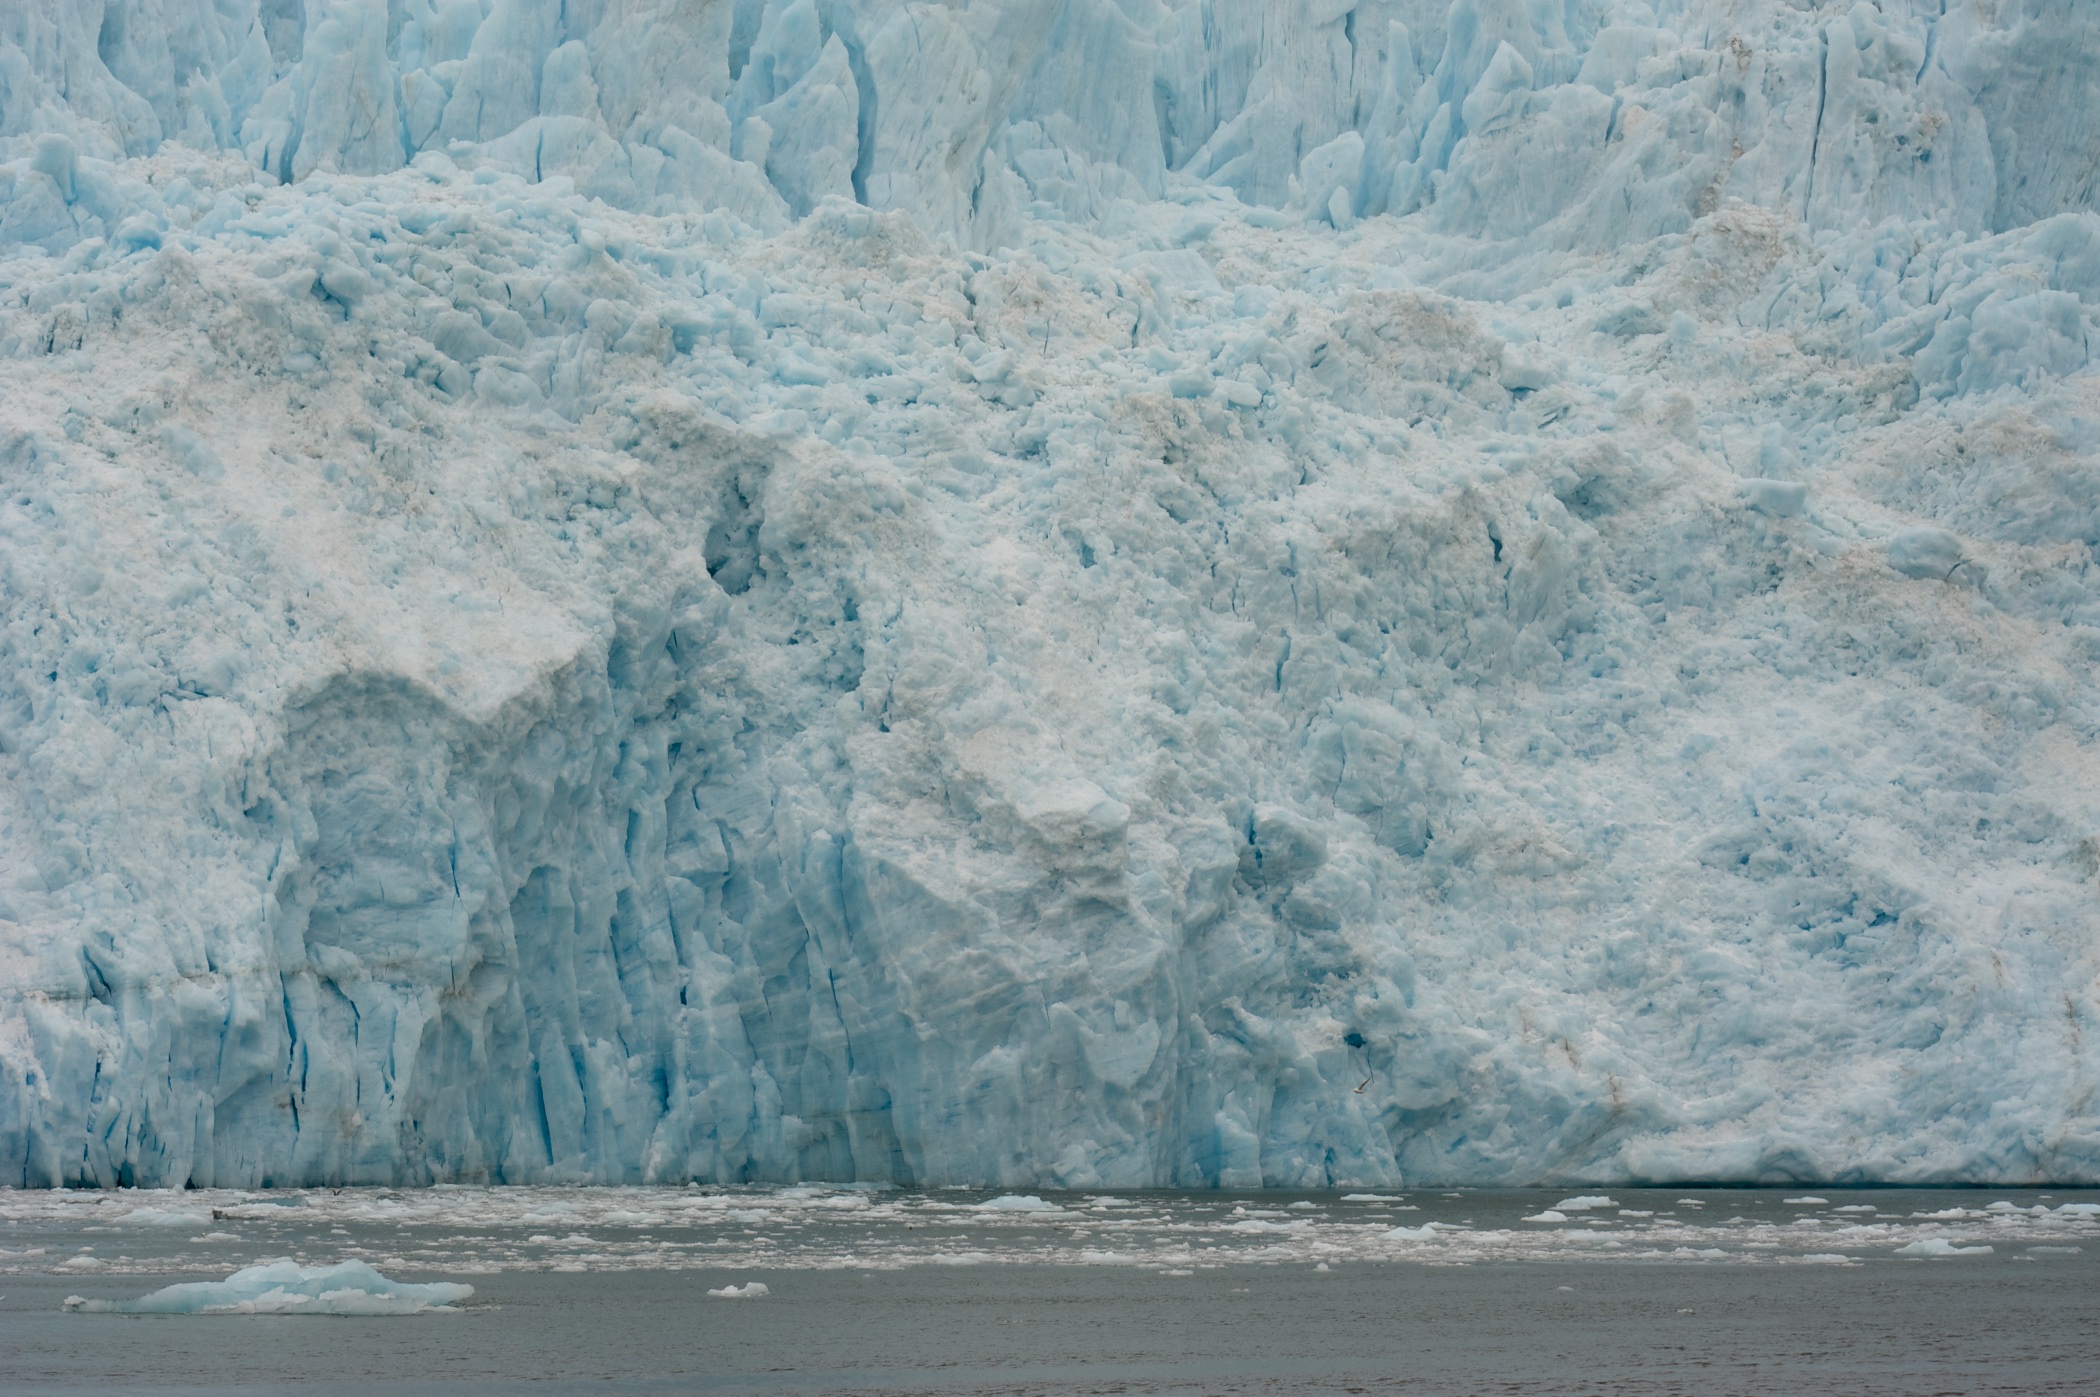  Aialik glacier, Resurrection Bay, Alaska 